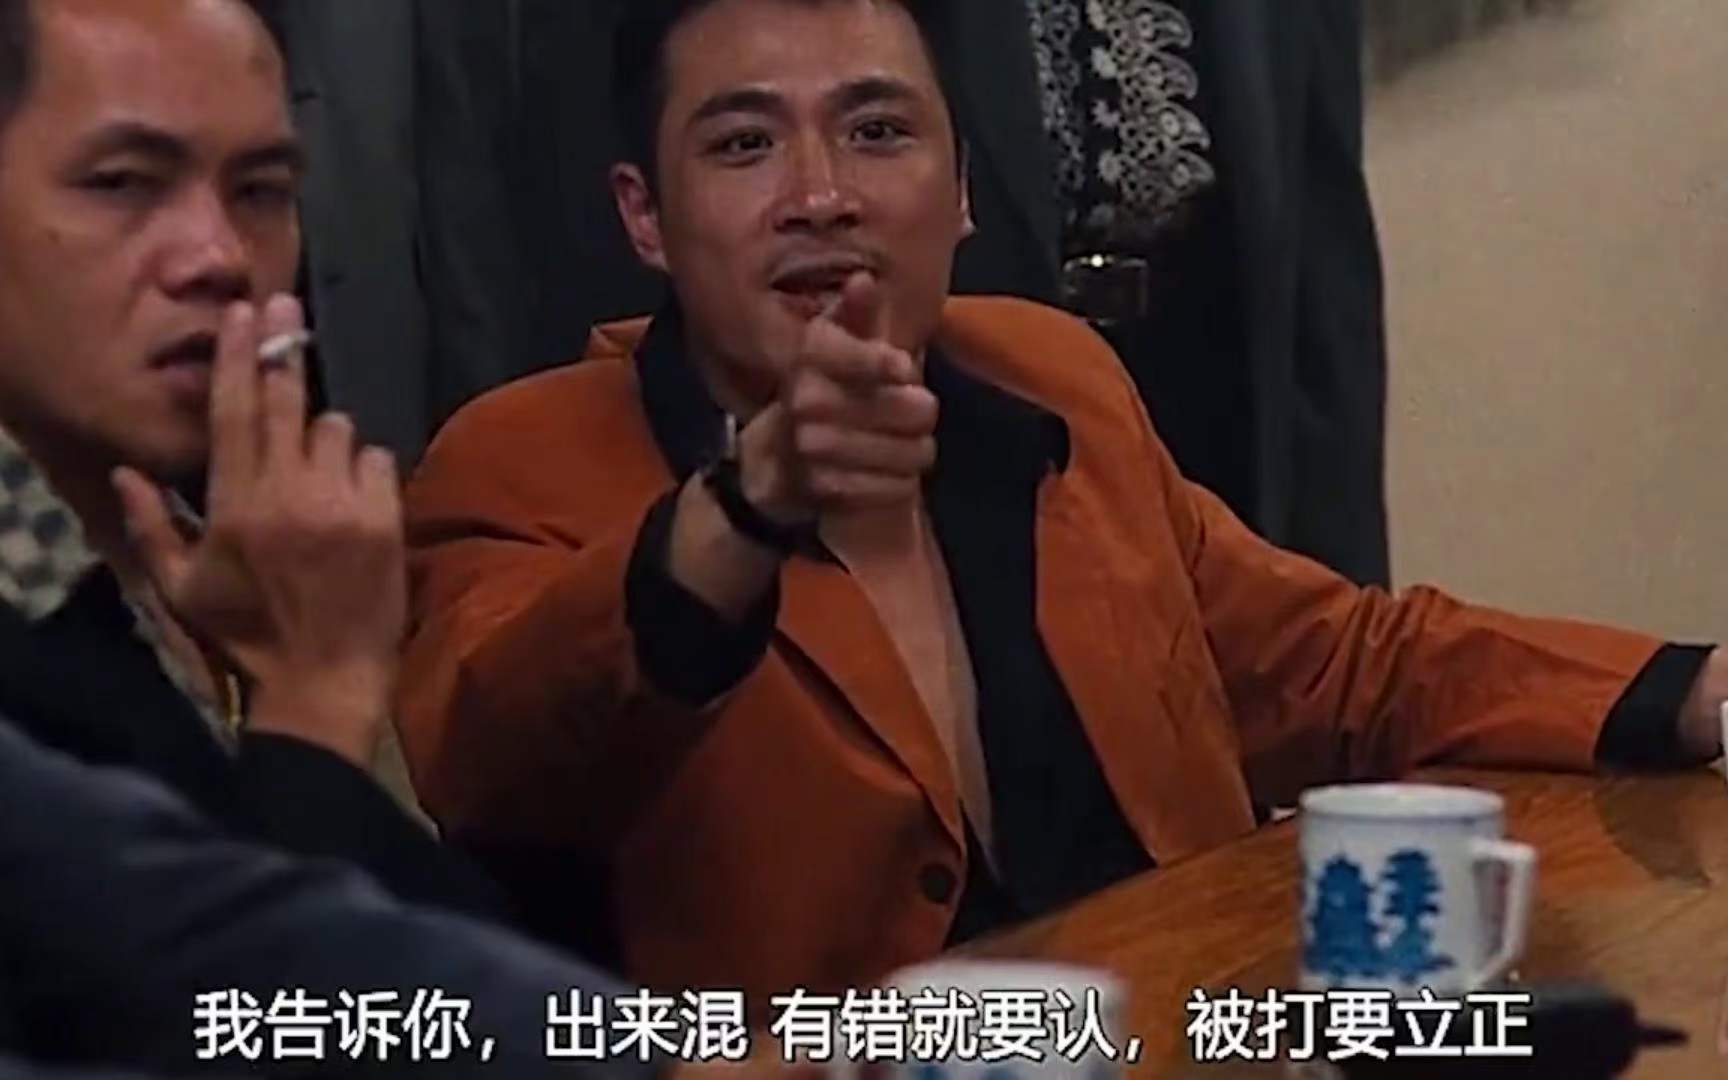 比如我选的角色坤哥,明显就是致敬了吴镇宇在《古惑仔》系列中扮演的